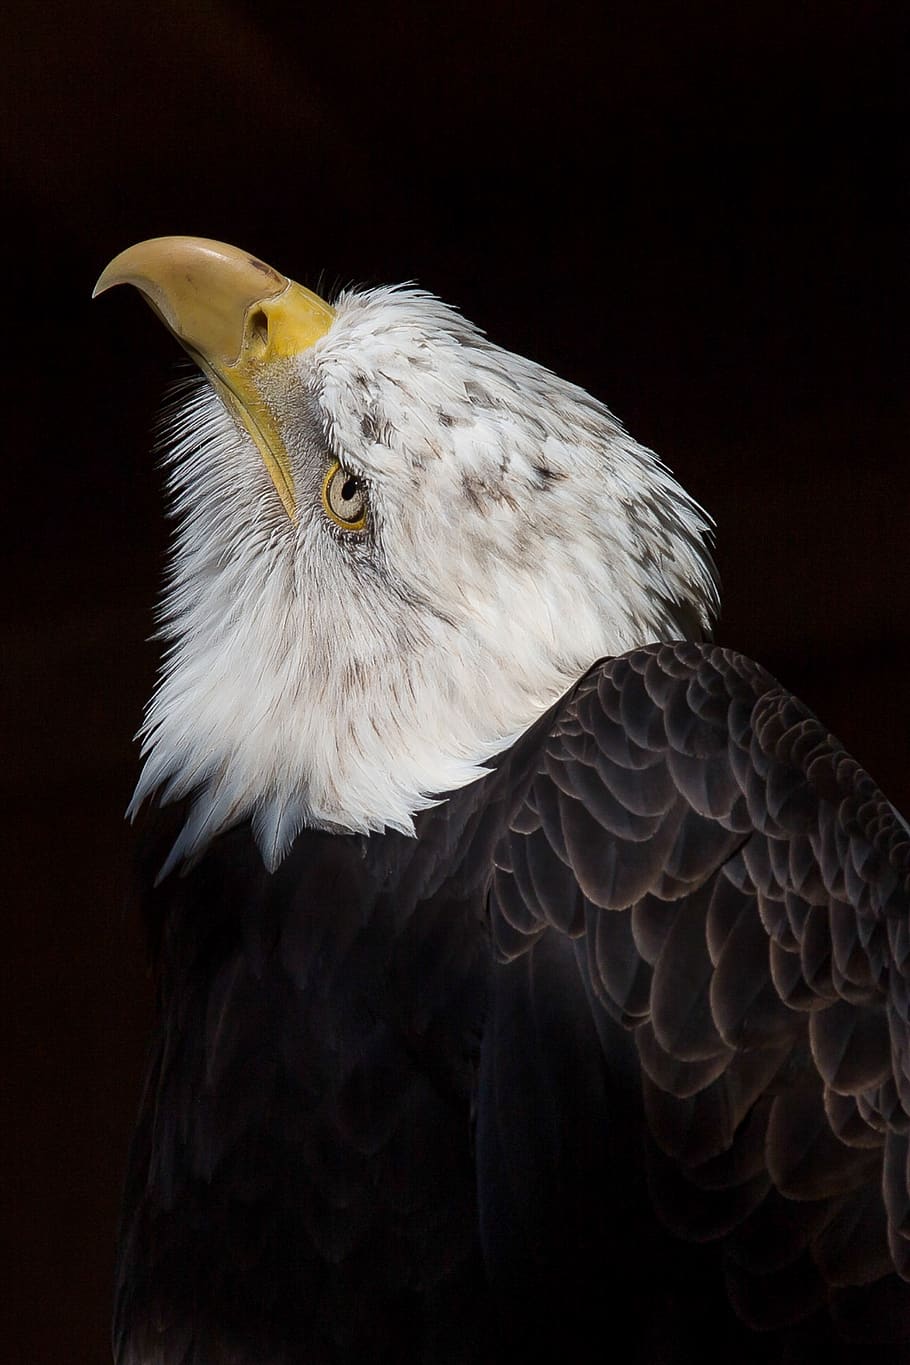 adler, águia americana, pássaro, ave de rapina, raptor, projeto de lei, natureza, animal, estados unidos da américa, águia de cauda branca